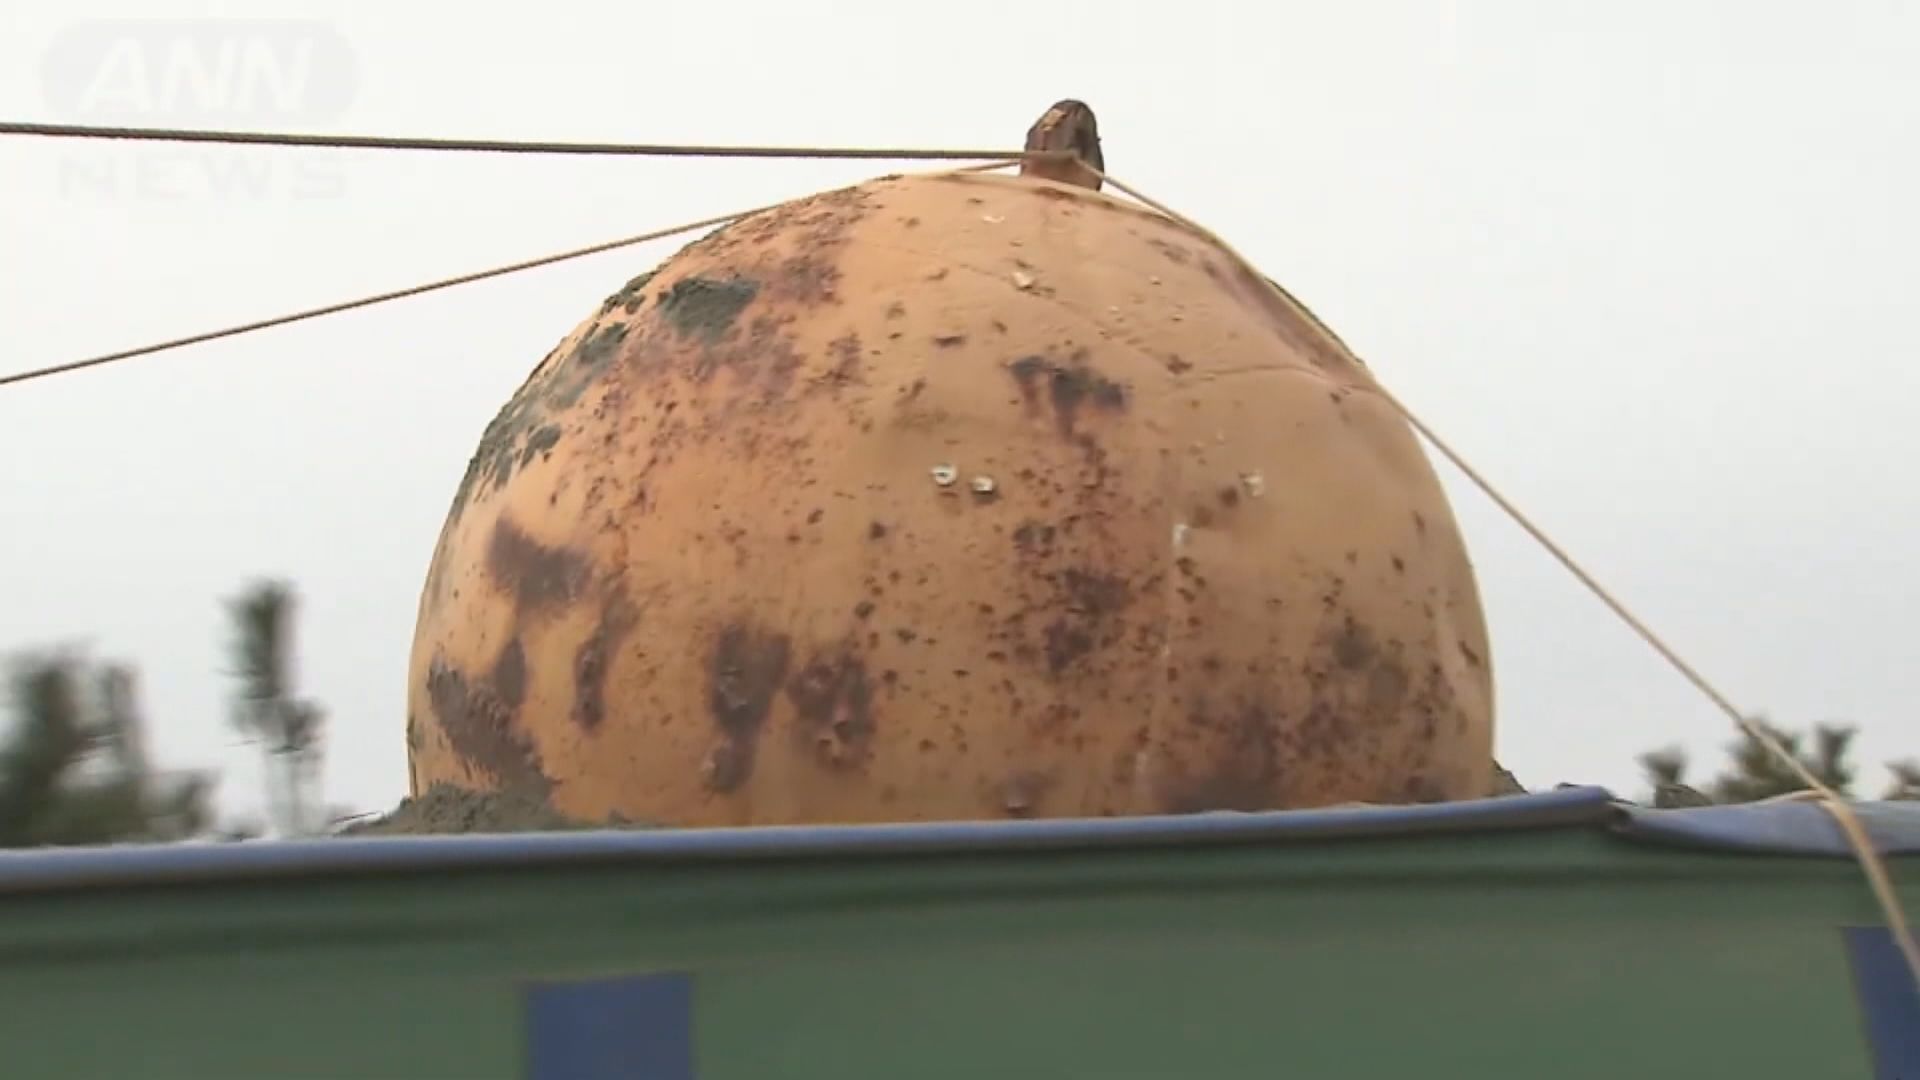 【環球薈報】日本靜岡縣沙灘巨型神秘鐵球被移走